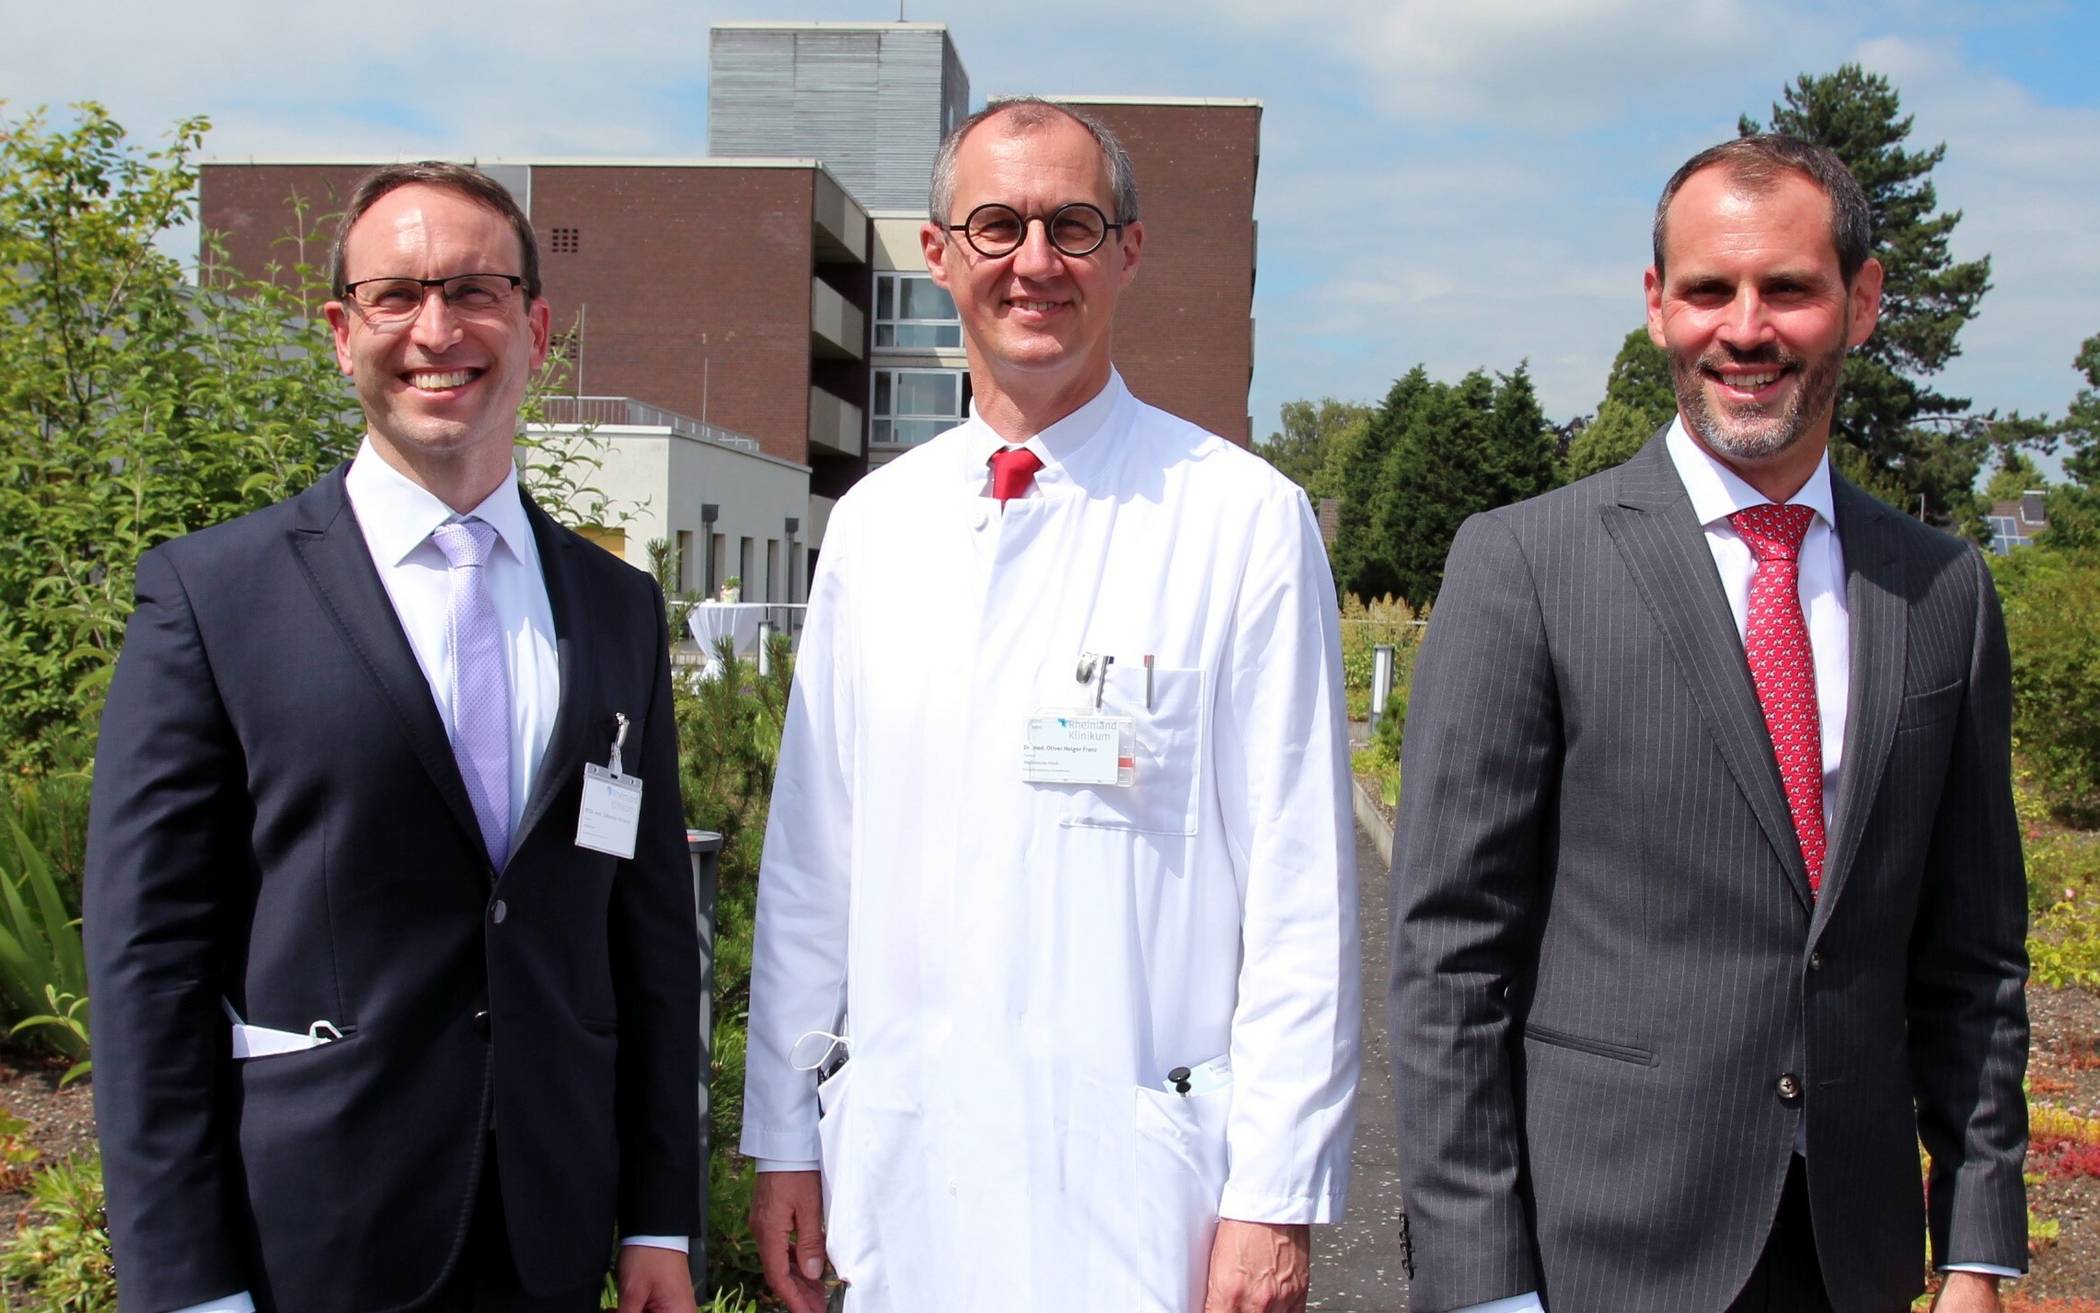  Dr. Sebastian Weiterer, Dr. Oliver Franz und Dr. Nicholas Bohnert sind heute als neue Chefärzte im Grevenbroicher „St. Elisabeth“ begrüßt worden (von links nach rechts). 